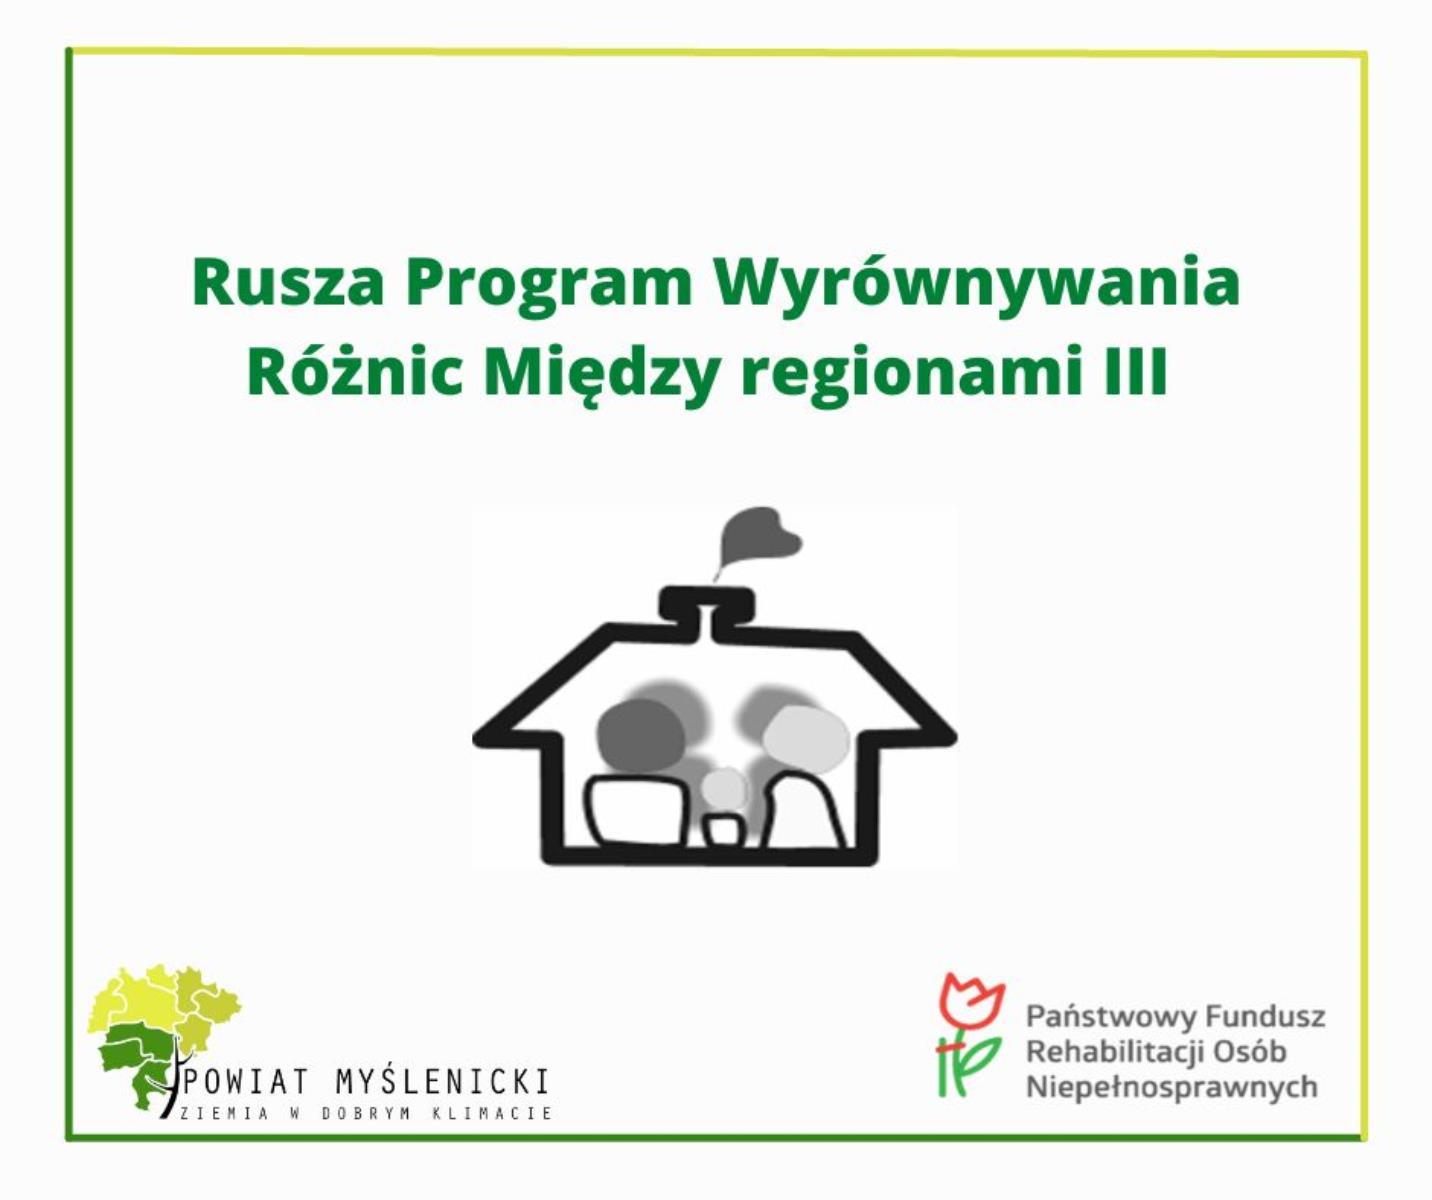 Rusza Program Wyrównywania Różnic Między regionami III.